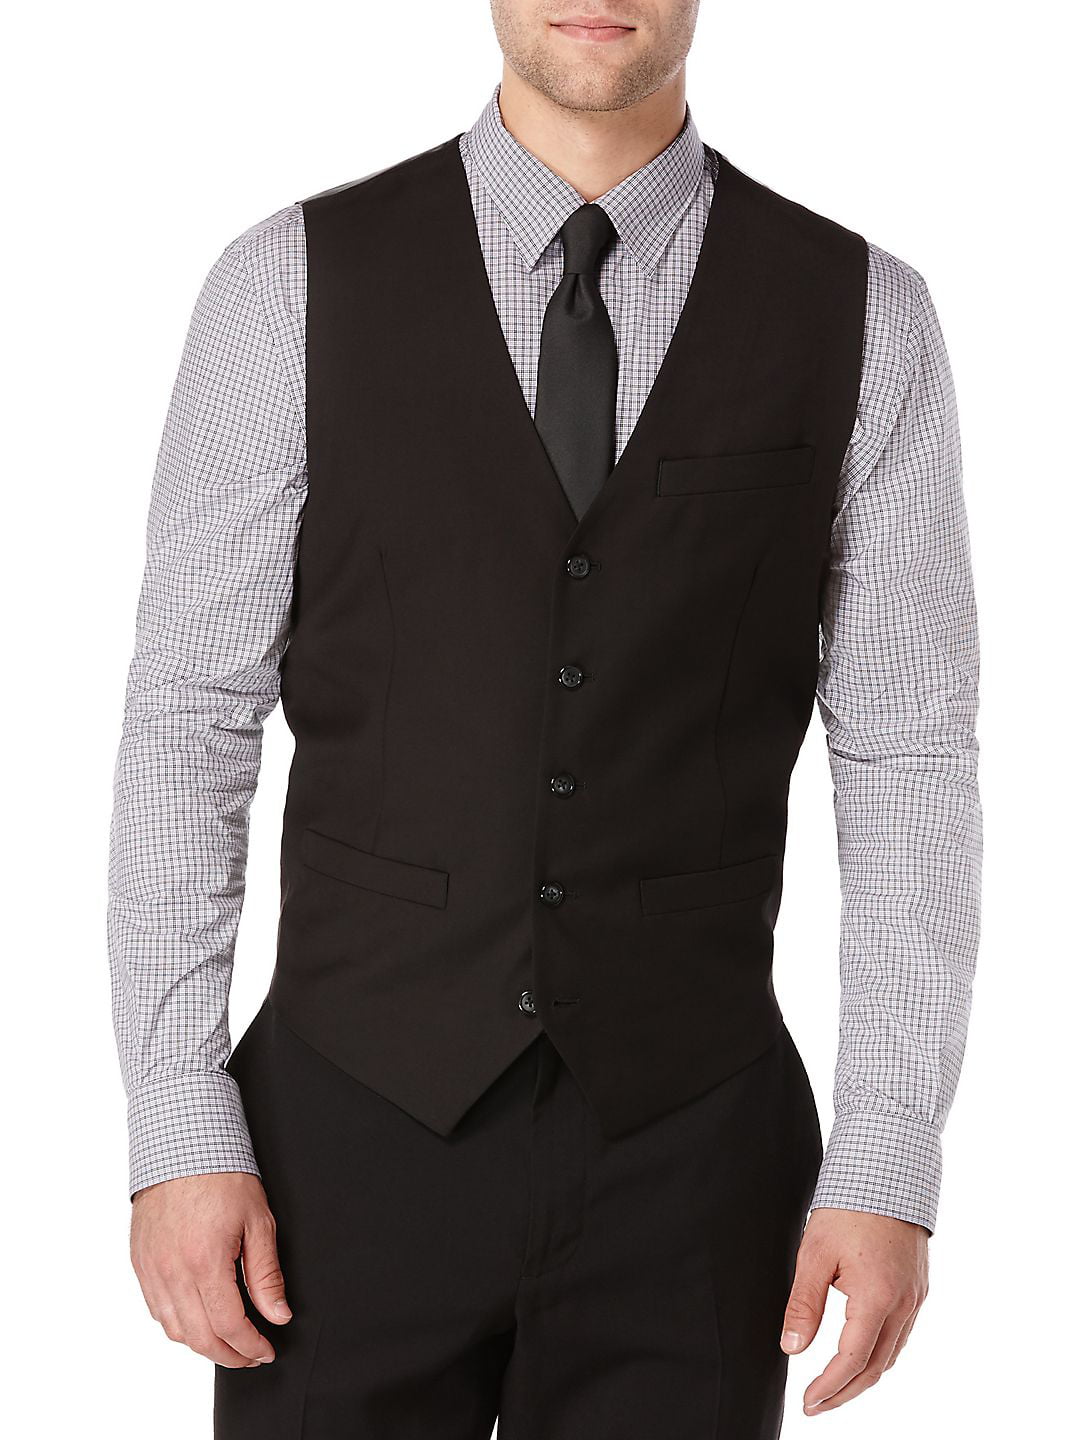 Perry Ellis - Big and Tall Suit Vest - Walmart.com - Walmart.com